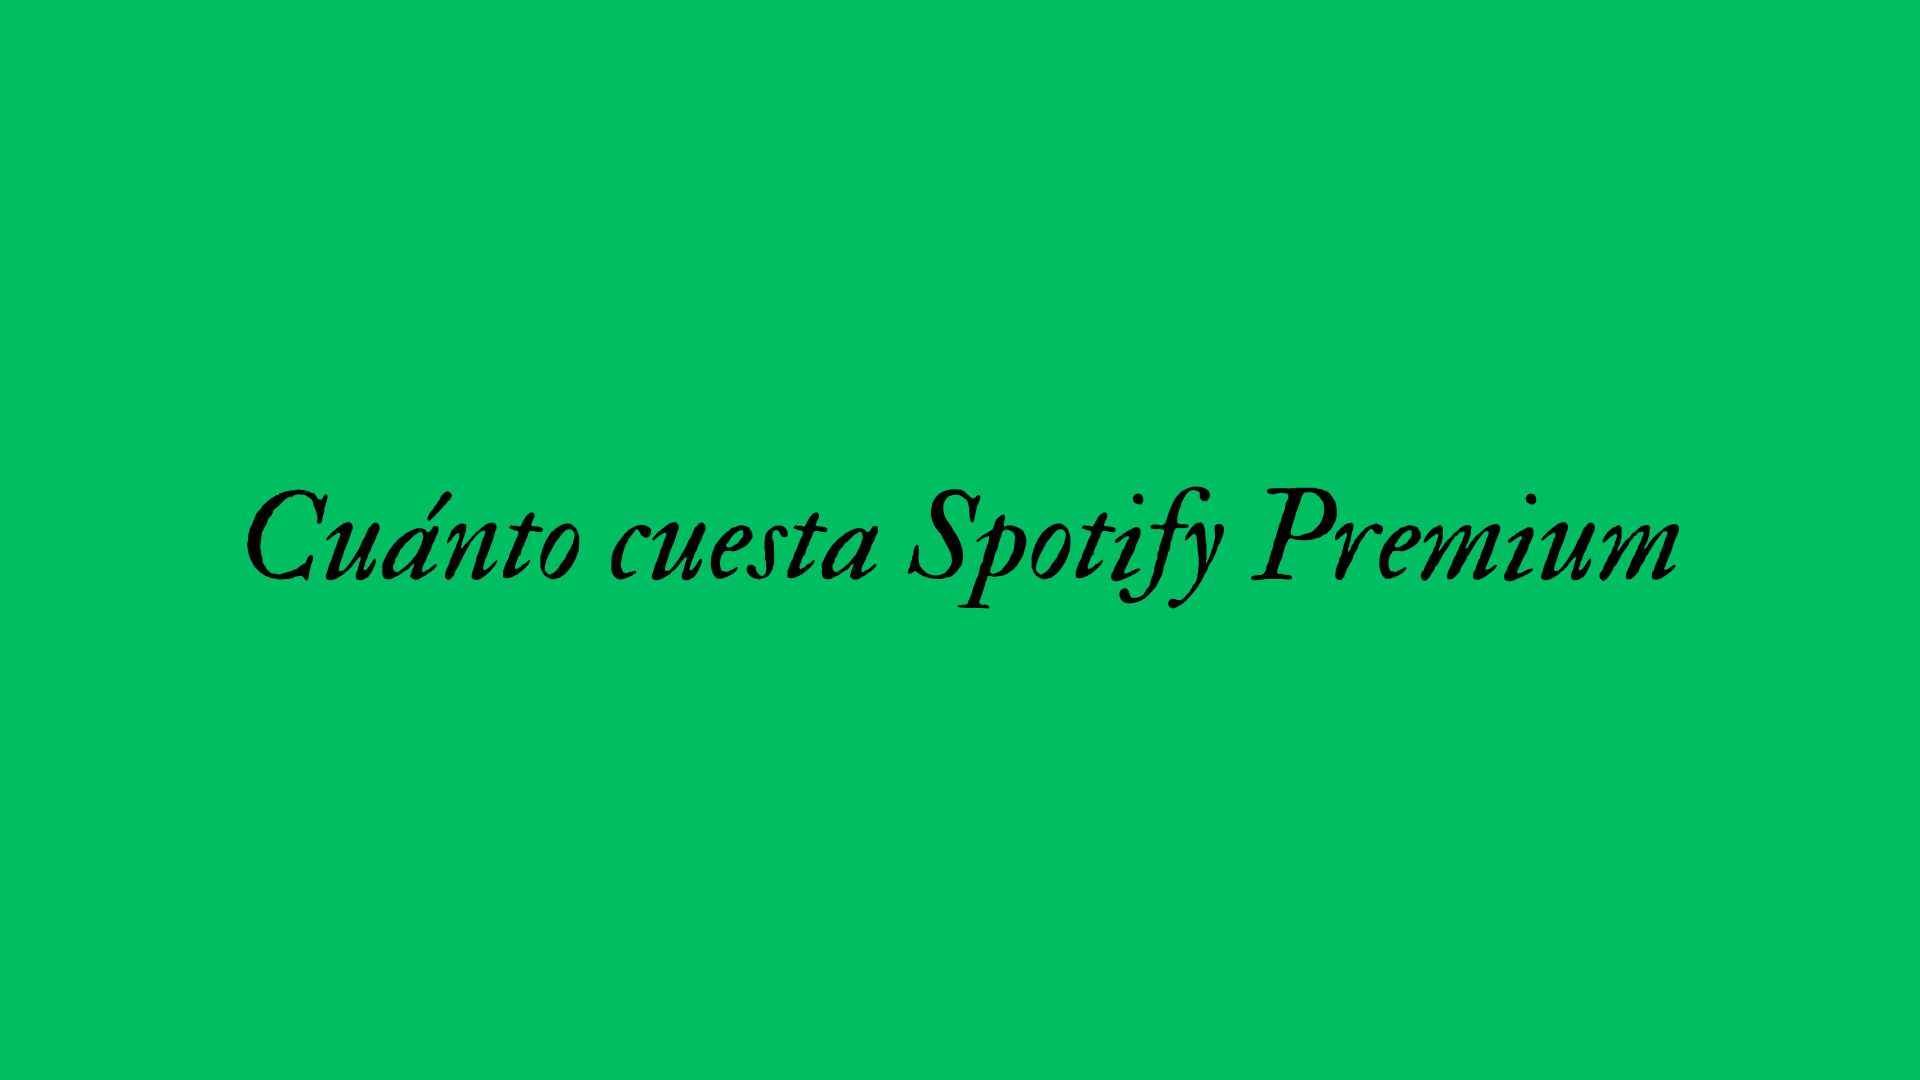 Cuánto cuesta Spotify Premium